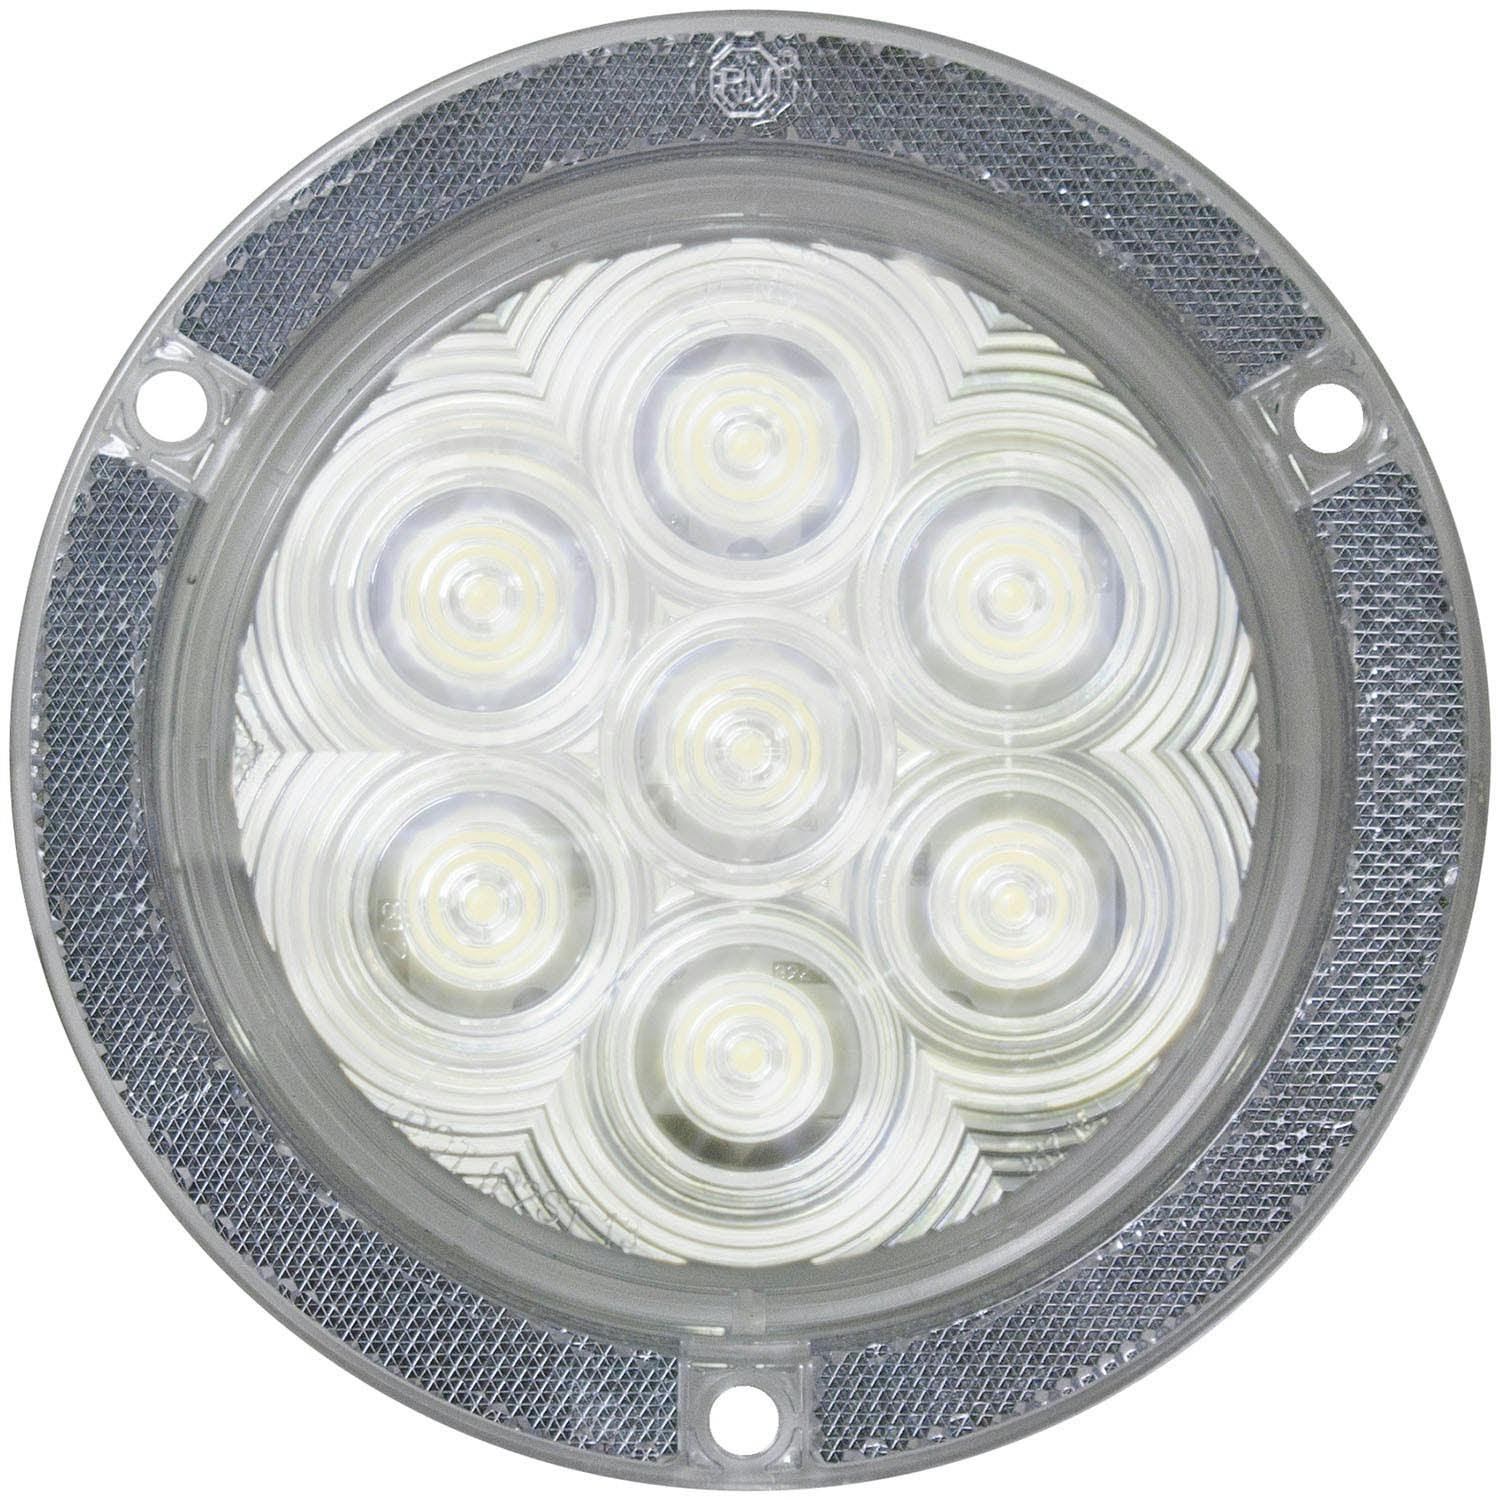 LED Back-Up Light, Round, w/ Reflex, Flange-Mount 4", white, bulk pack (Pack of 50) - 829-7